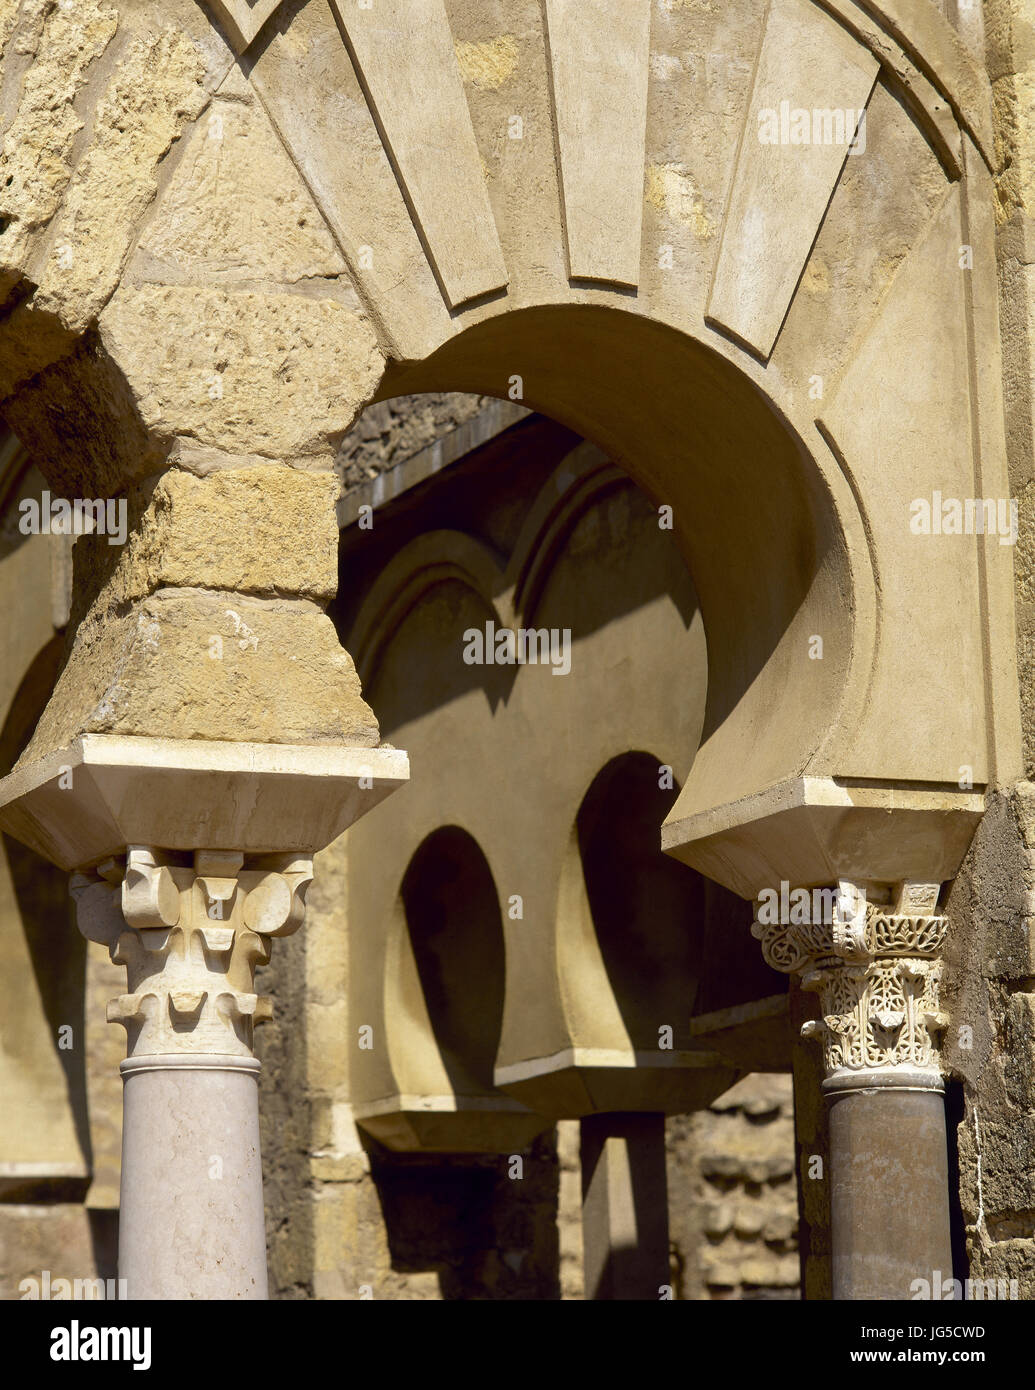 Il Medina Azahara. Musulmani palazzo medievale-città costruita da-Abd ar-Rahman II al-Nasir, decimo secolo. Umayyad Califfo di Cordoba, Spagna. Dettaglio arco moresco. Foto Stock